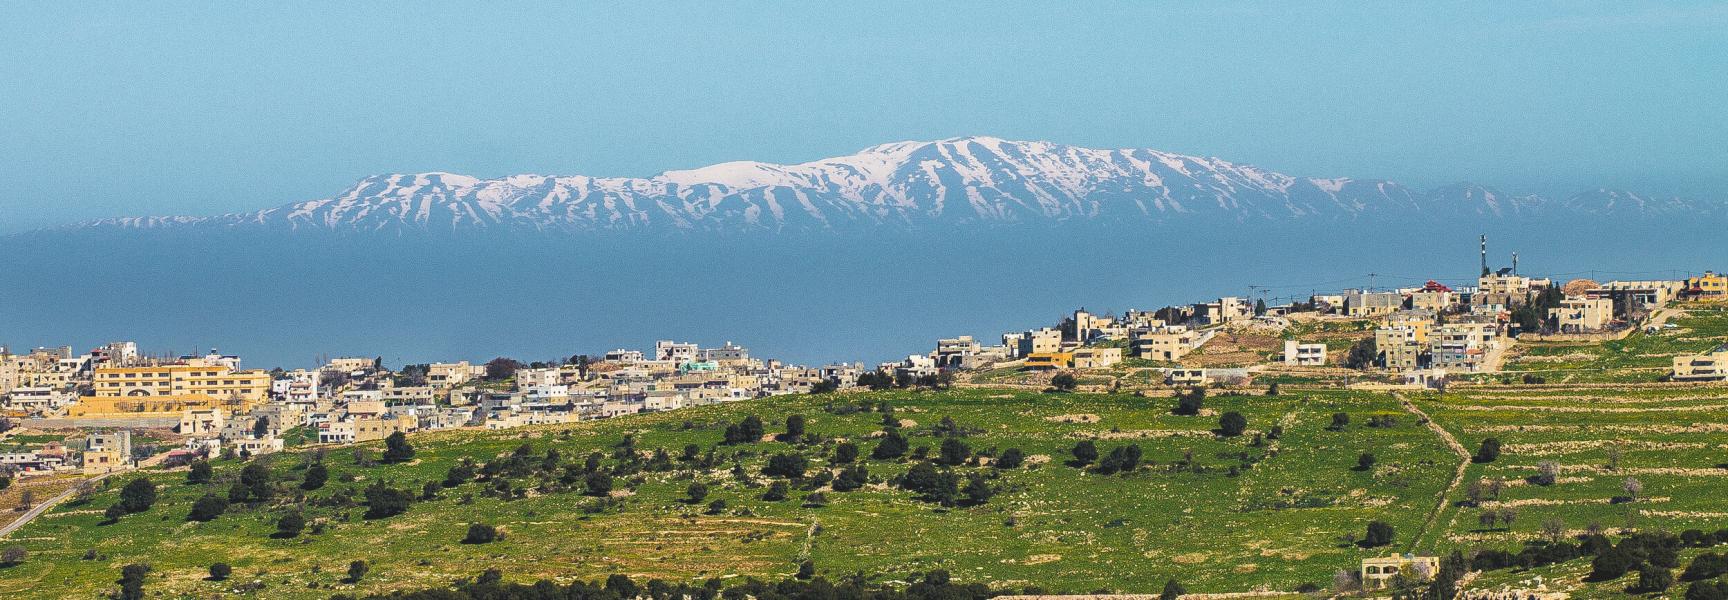 Panorama of Ajlun in Jordan